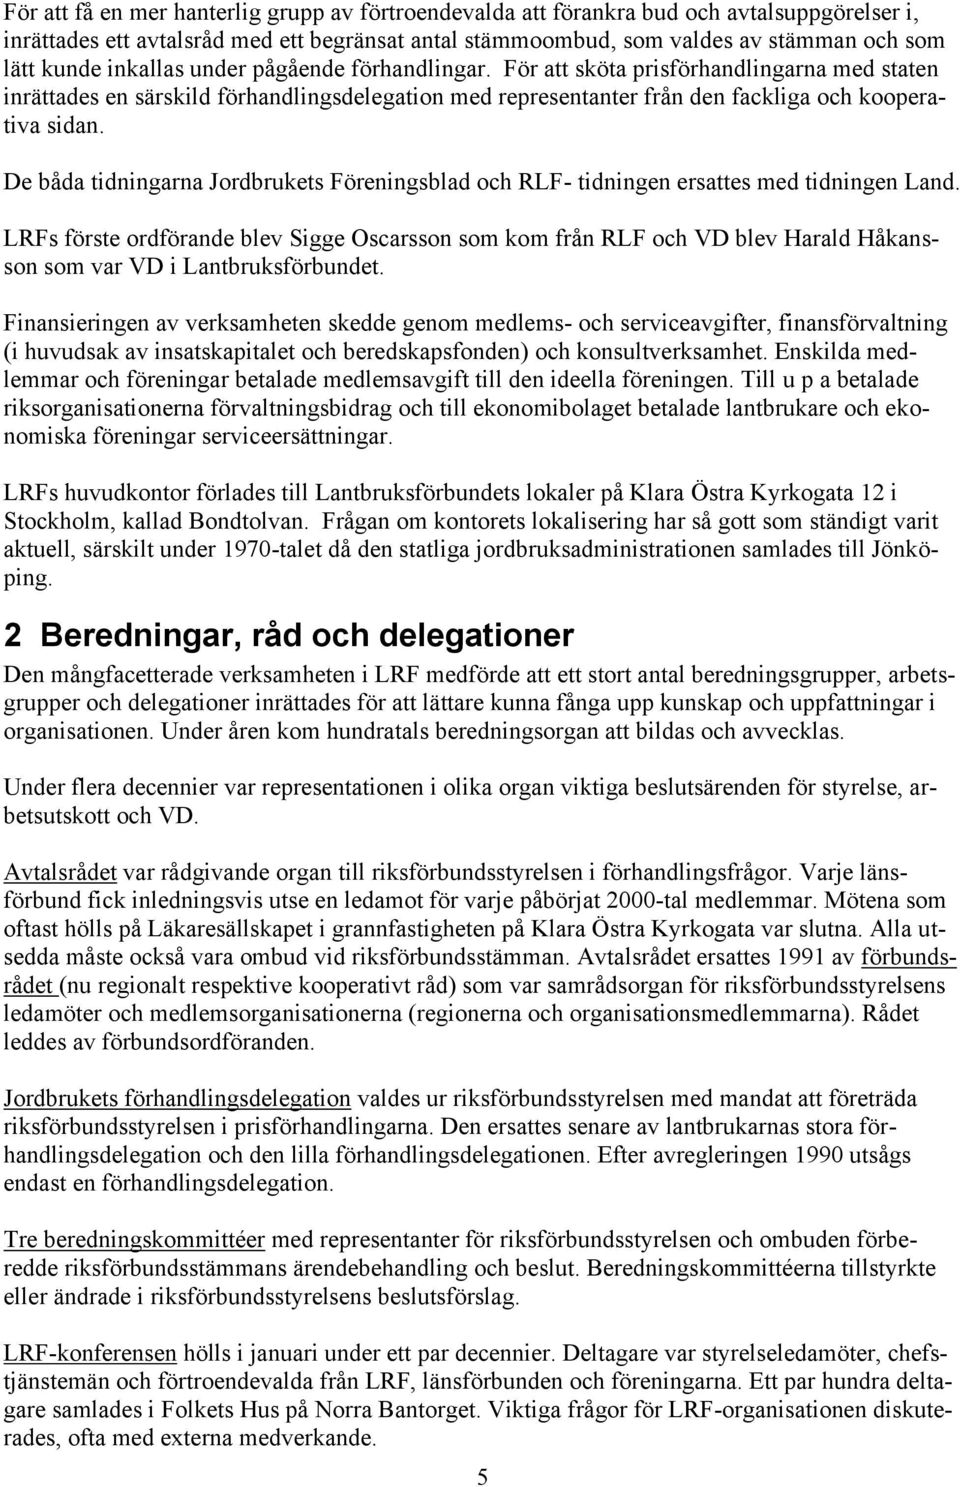 De båda tidningarna Jordbrukets Föreningsblad och RLF- tidningen ersattes med tidningen Land.